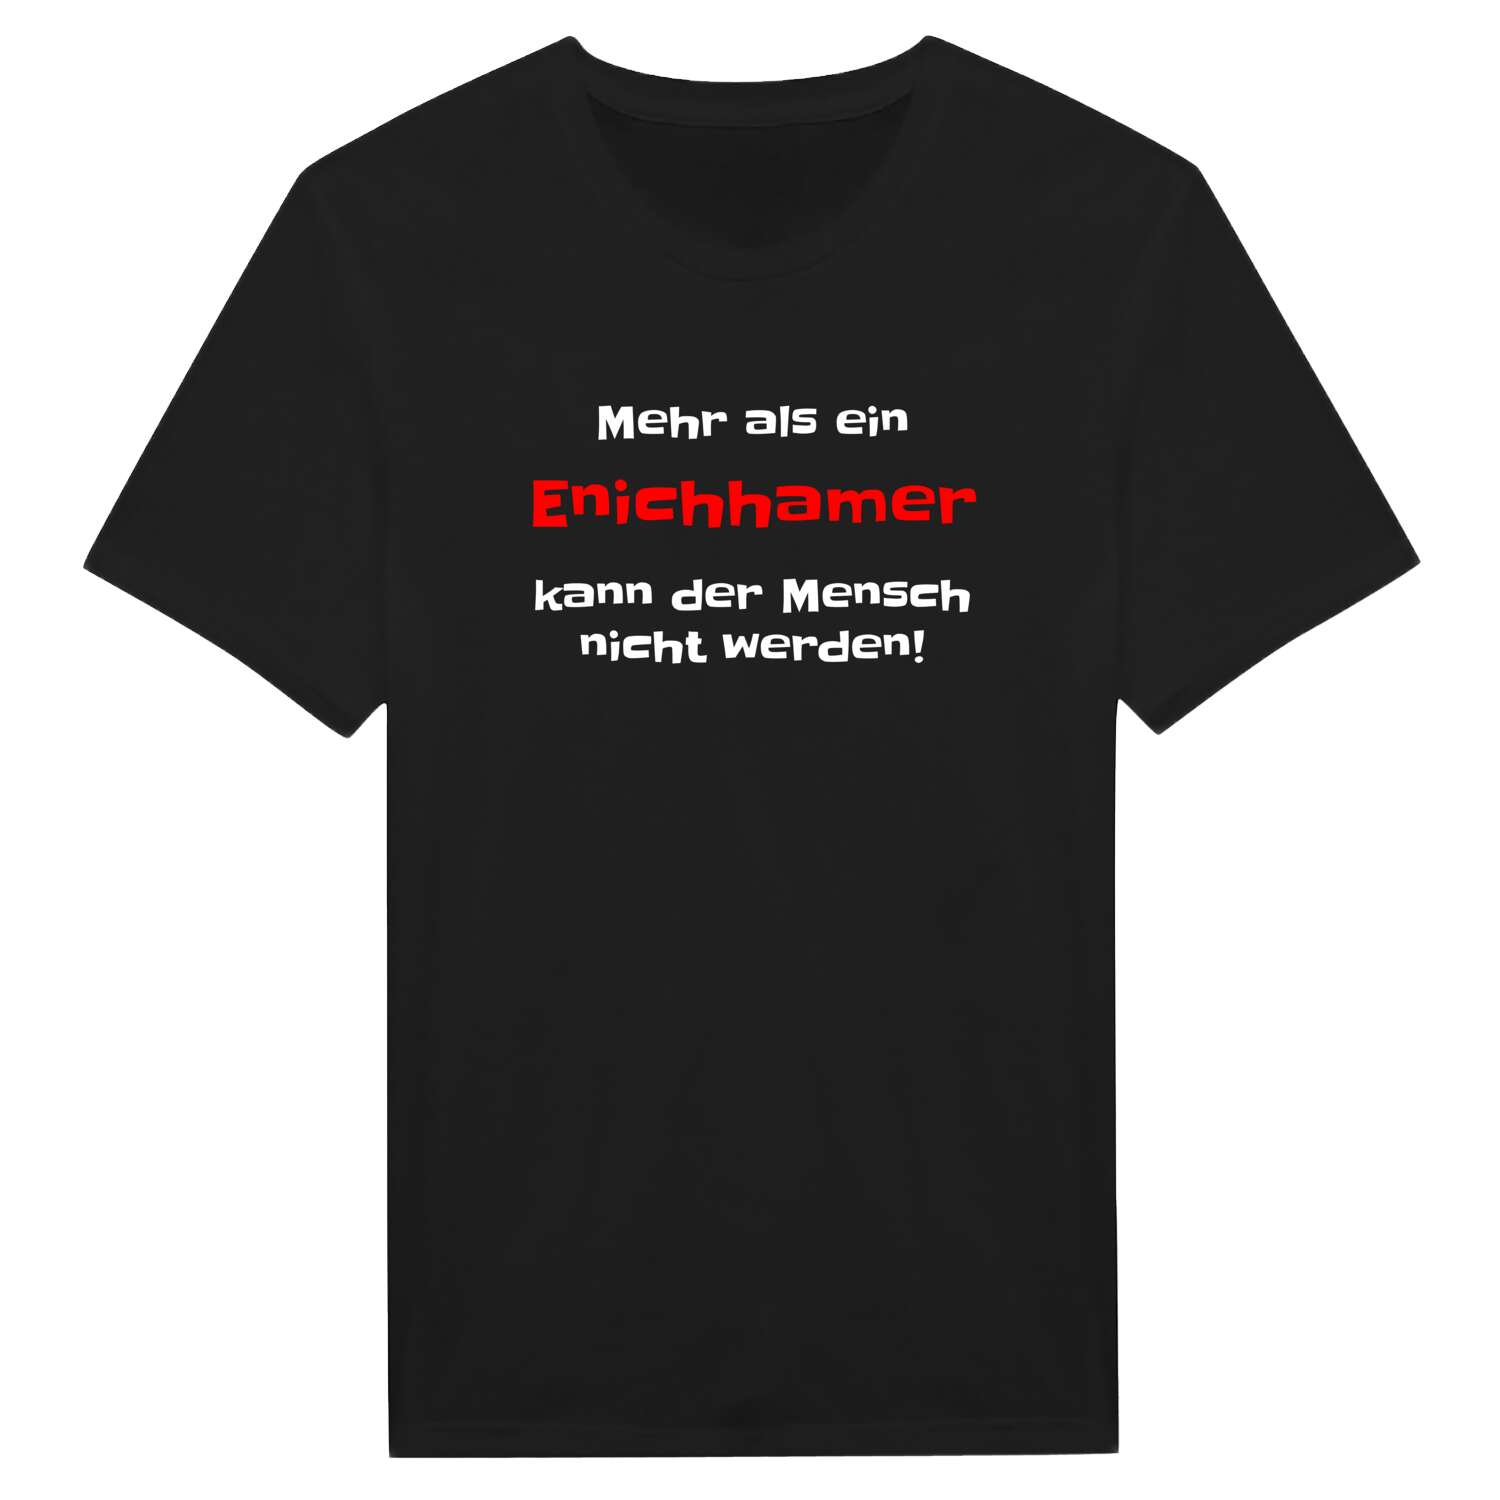 Enichham T-Shirt »Mehr als ein«